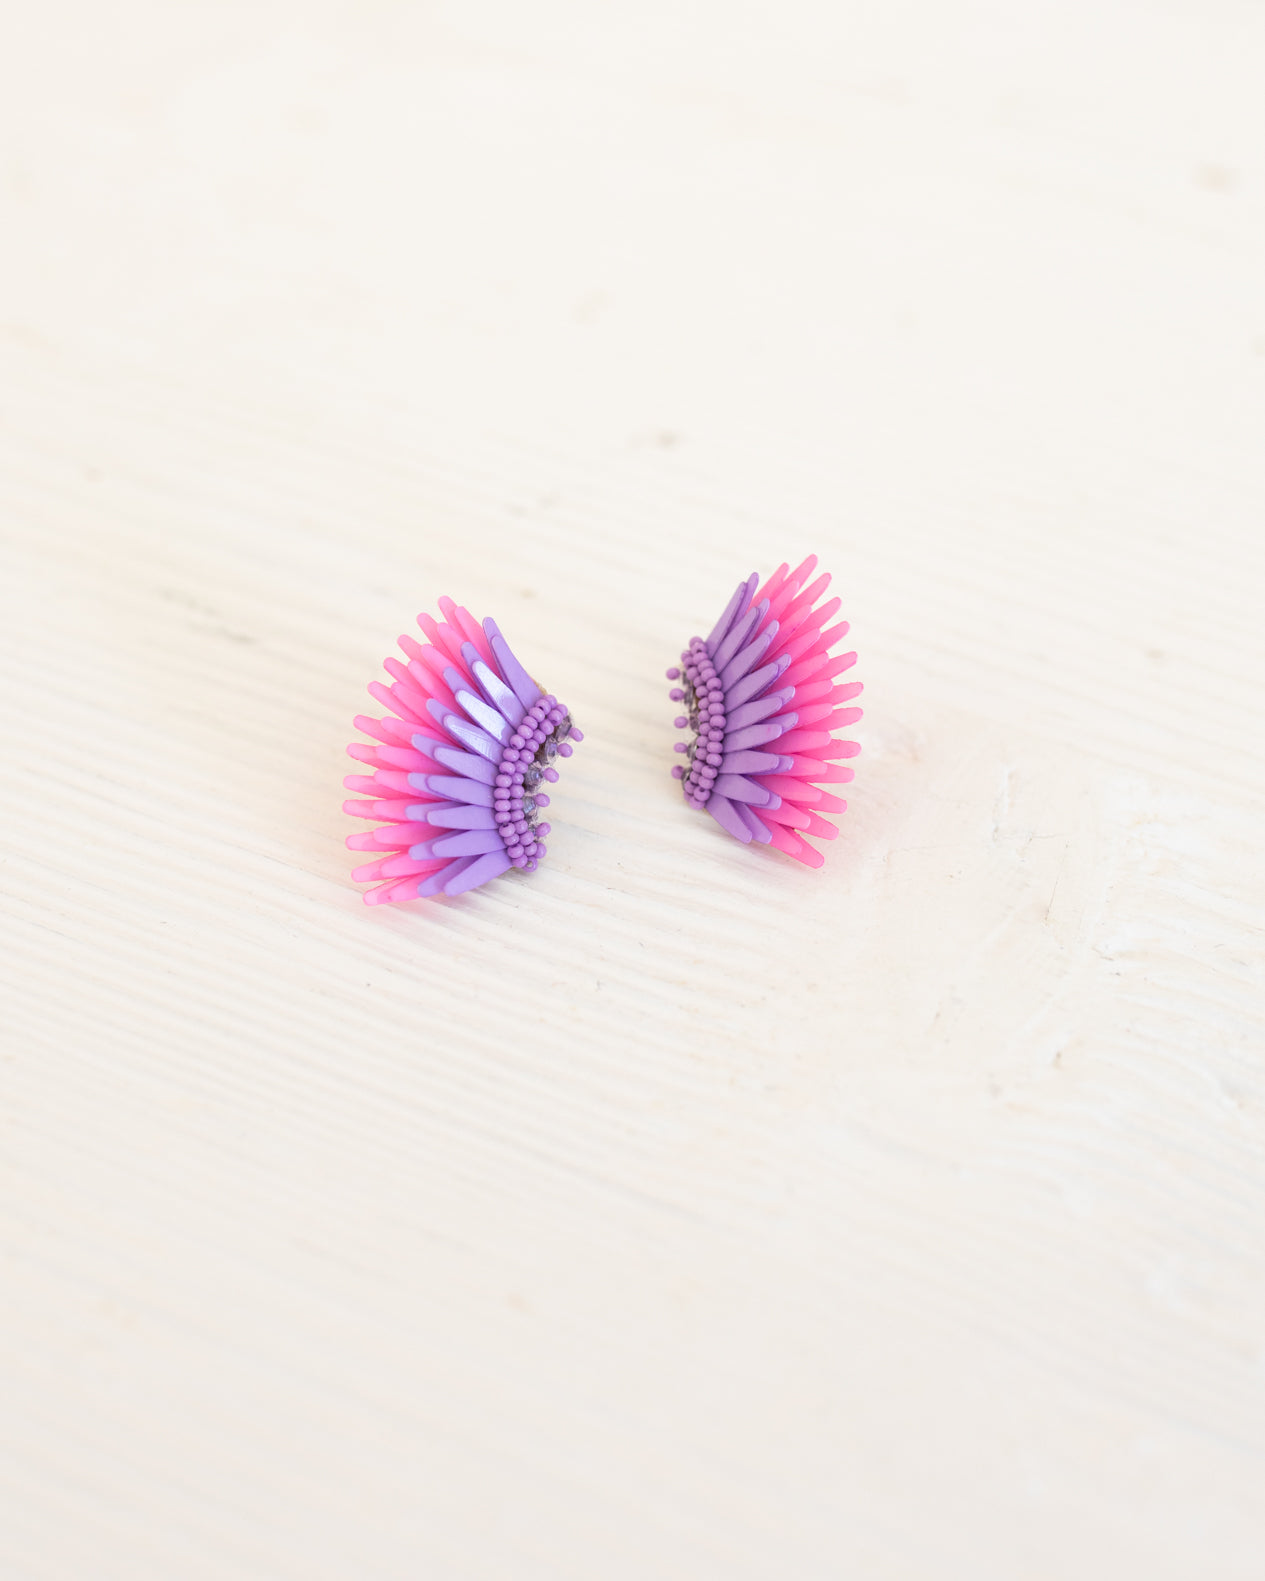 MICRO MADELINE EARRINGS in Purple and Pink MIGNONNE GAVIGAN